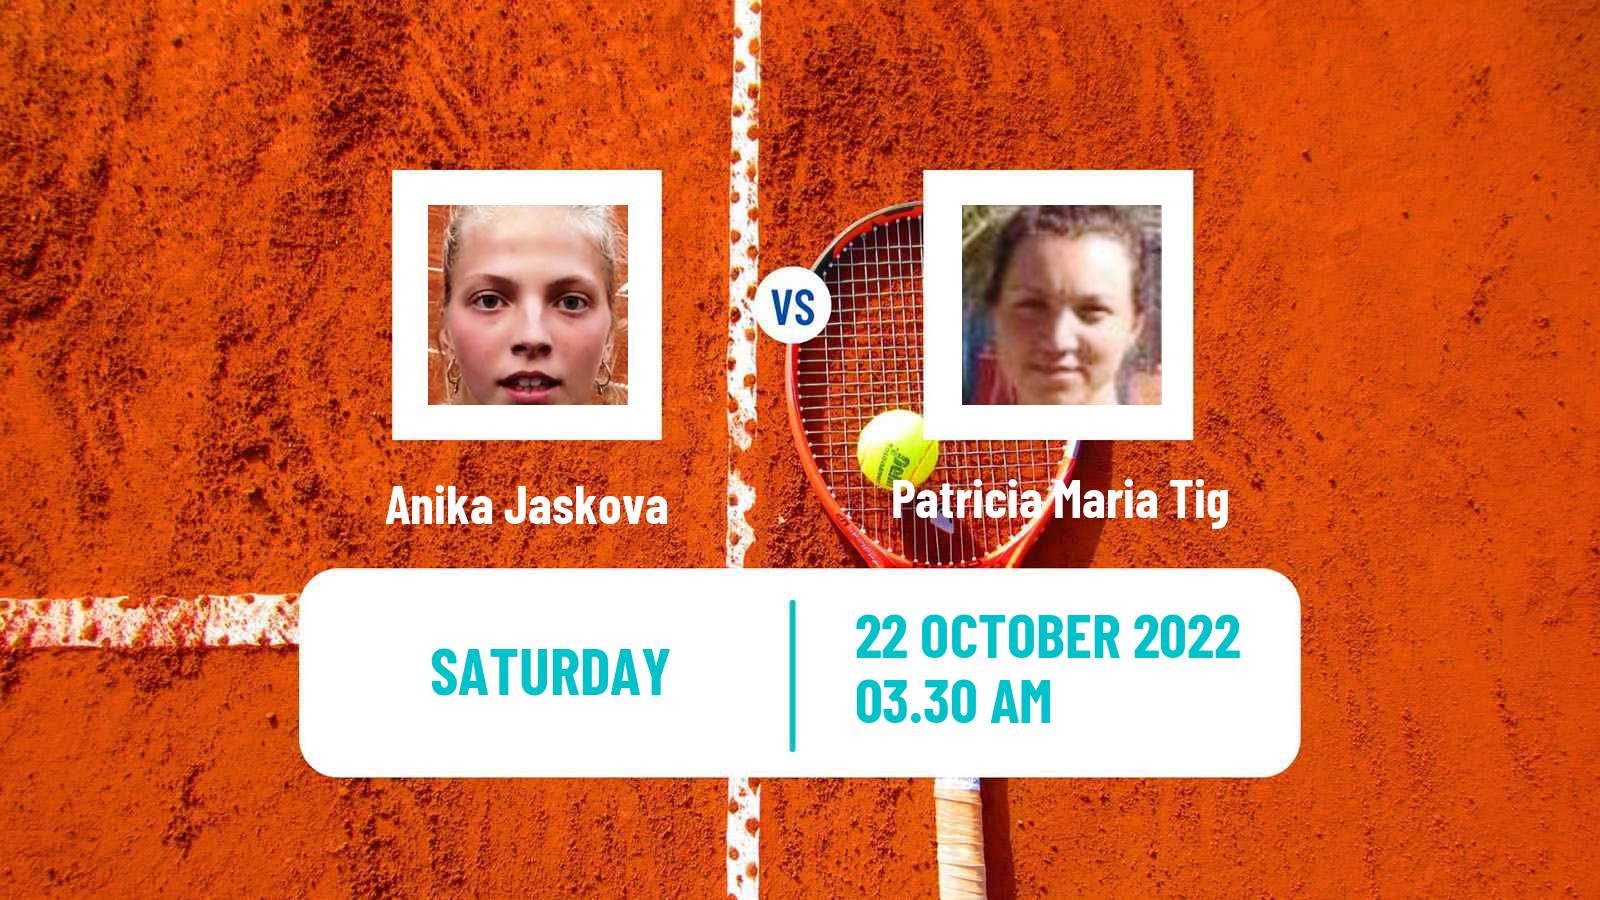 Tennis ITF Tournaments Anika Jaskova - Patricia Maria Tig